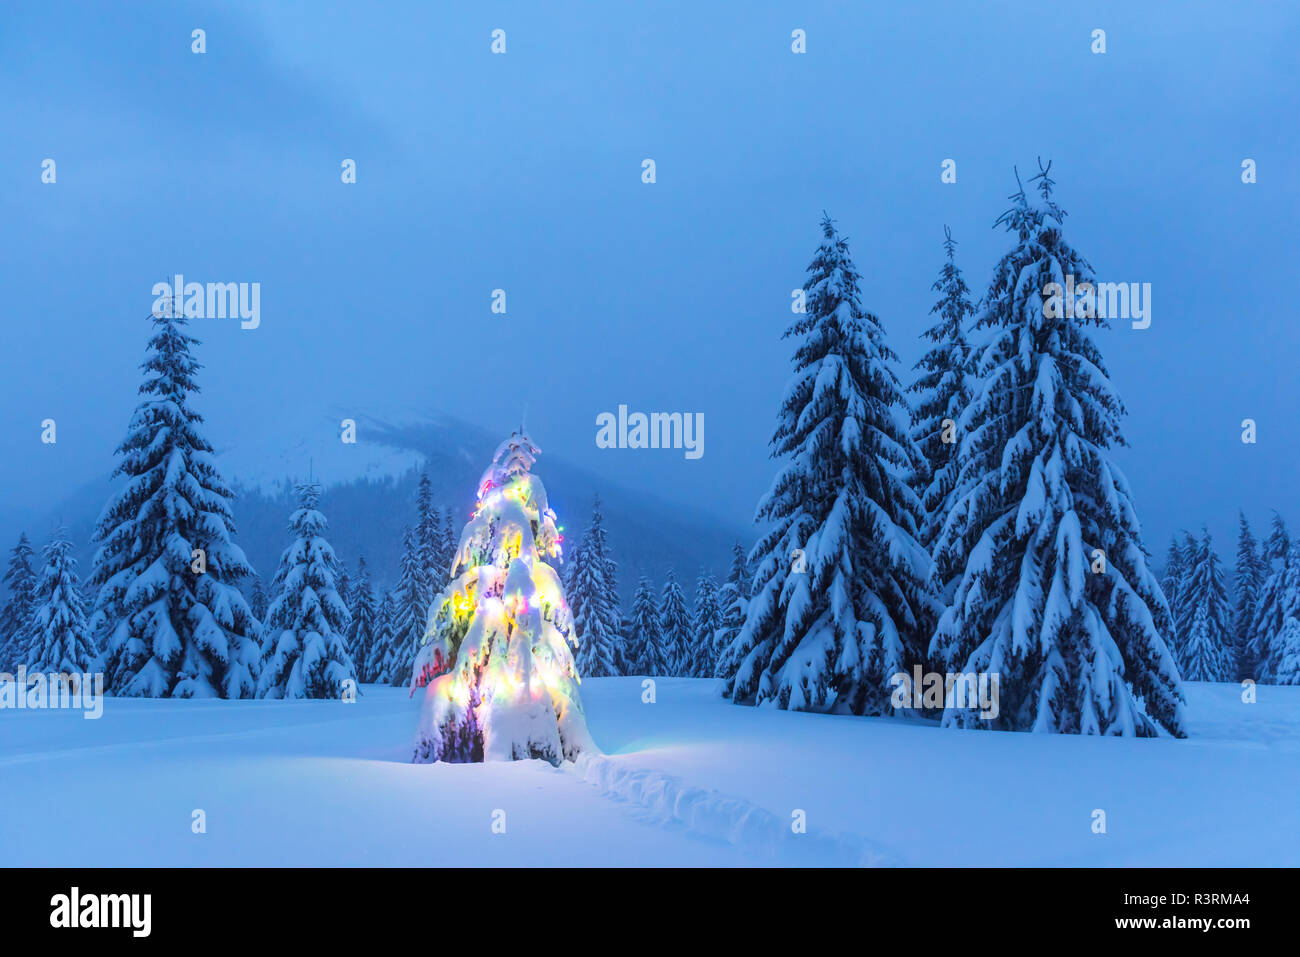 Holiday paisaje con árbol de Navidad, la nieve y las luces en montañas en invierno. Celebración del Año Nuevo concepto Foto de stock